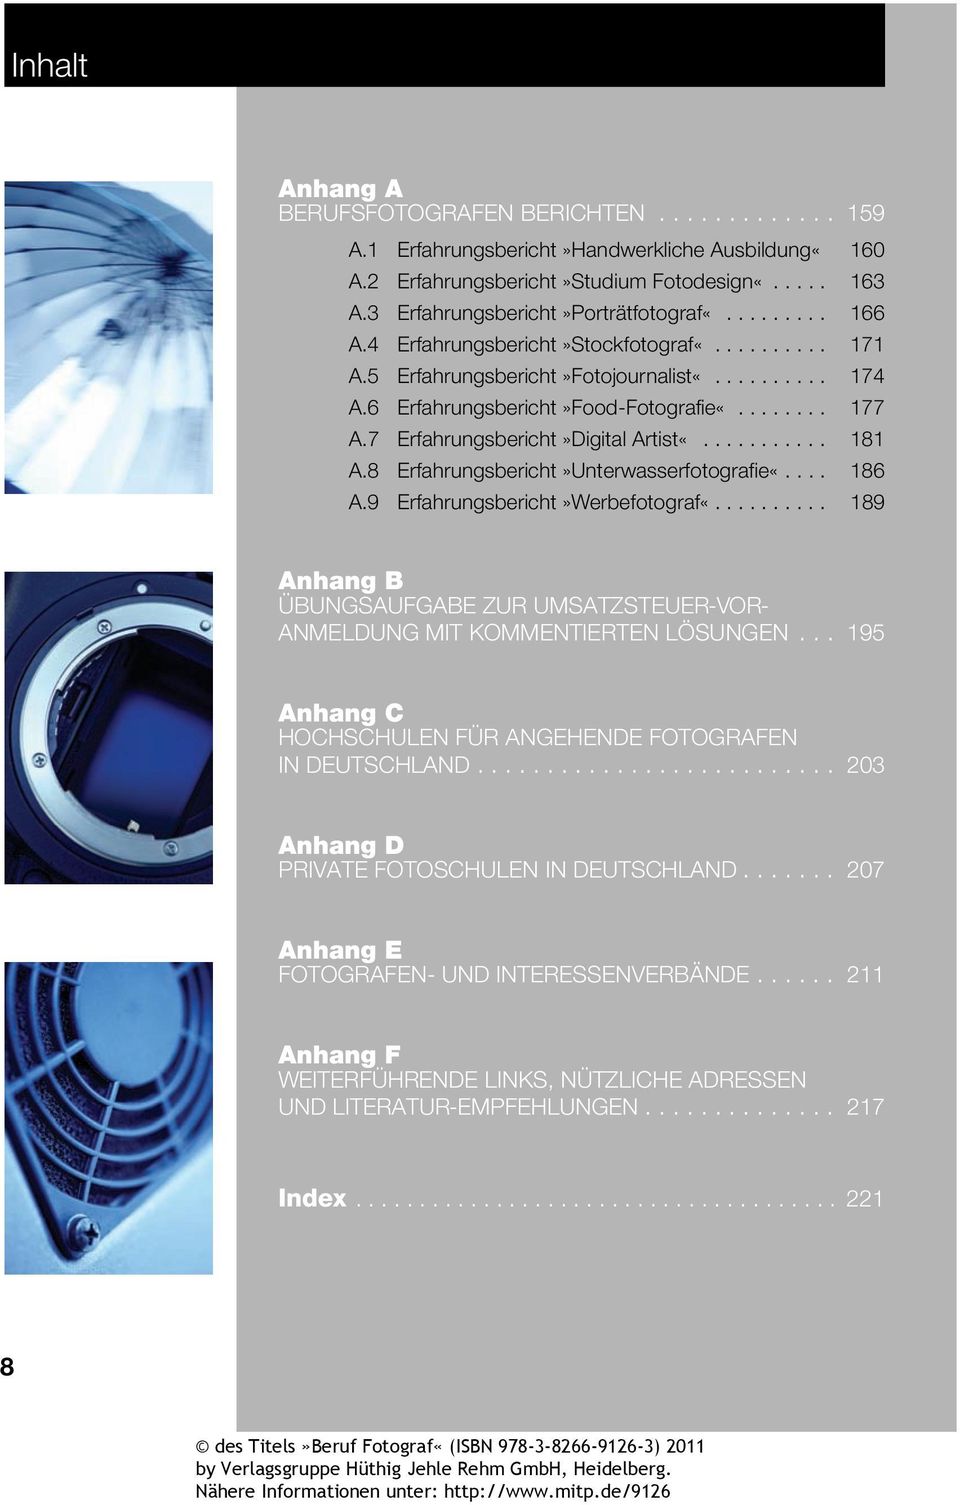 6 Erfahrungsbericht»Food-Fotografie«........ 177 A.7 Erfahrungsbericht»Digital Artist«........... 181 A.8 Erfahrungsbericht»Unterwasserfotografie«.... 186 A.9 Erfahrungsbericht»Werbefotograf«.